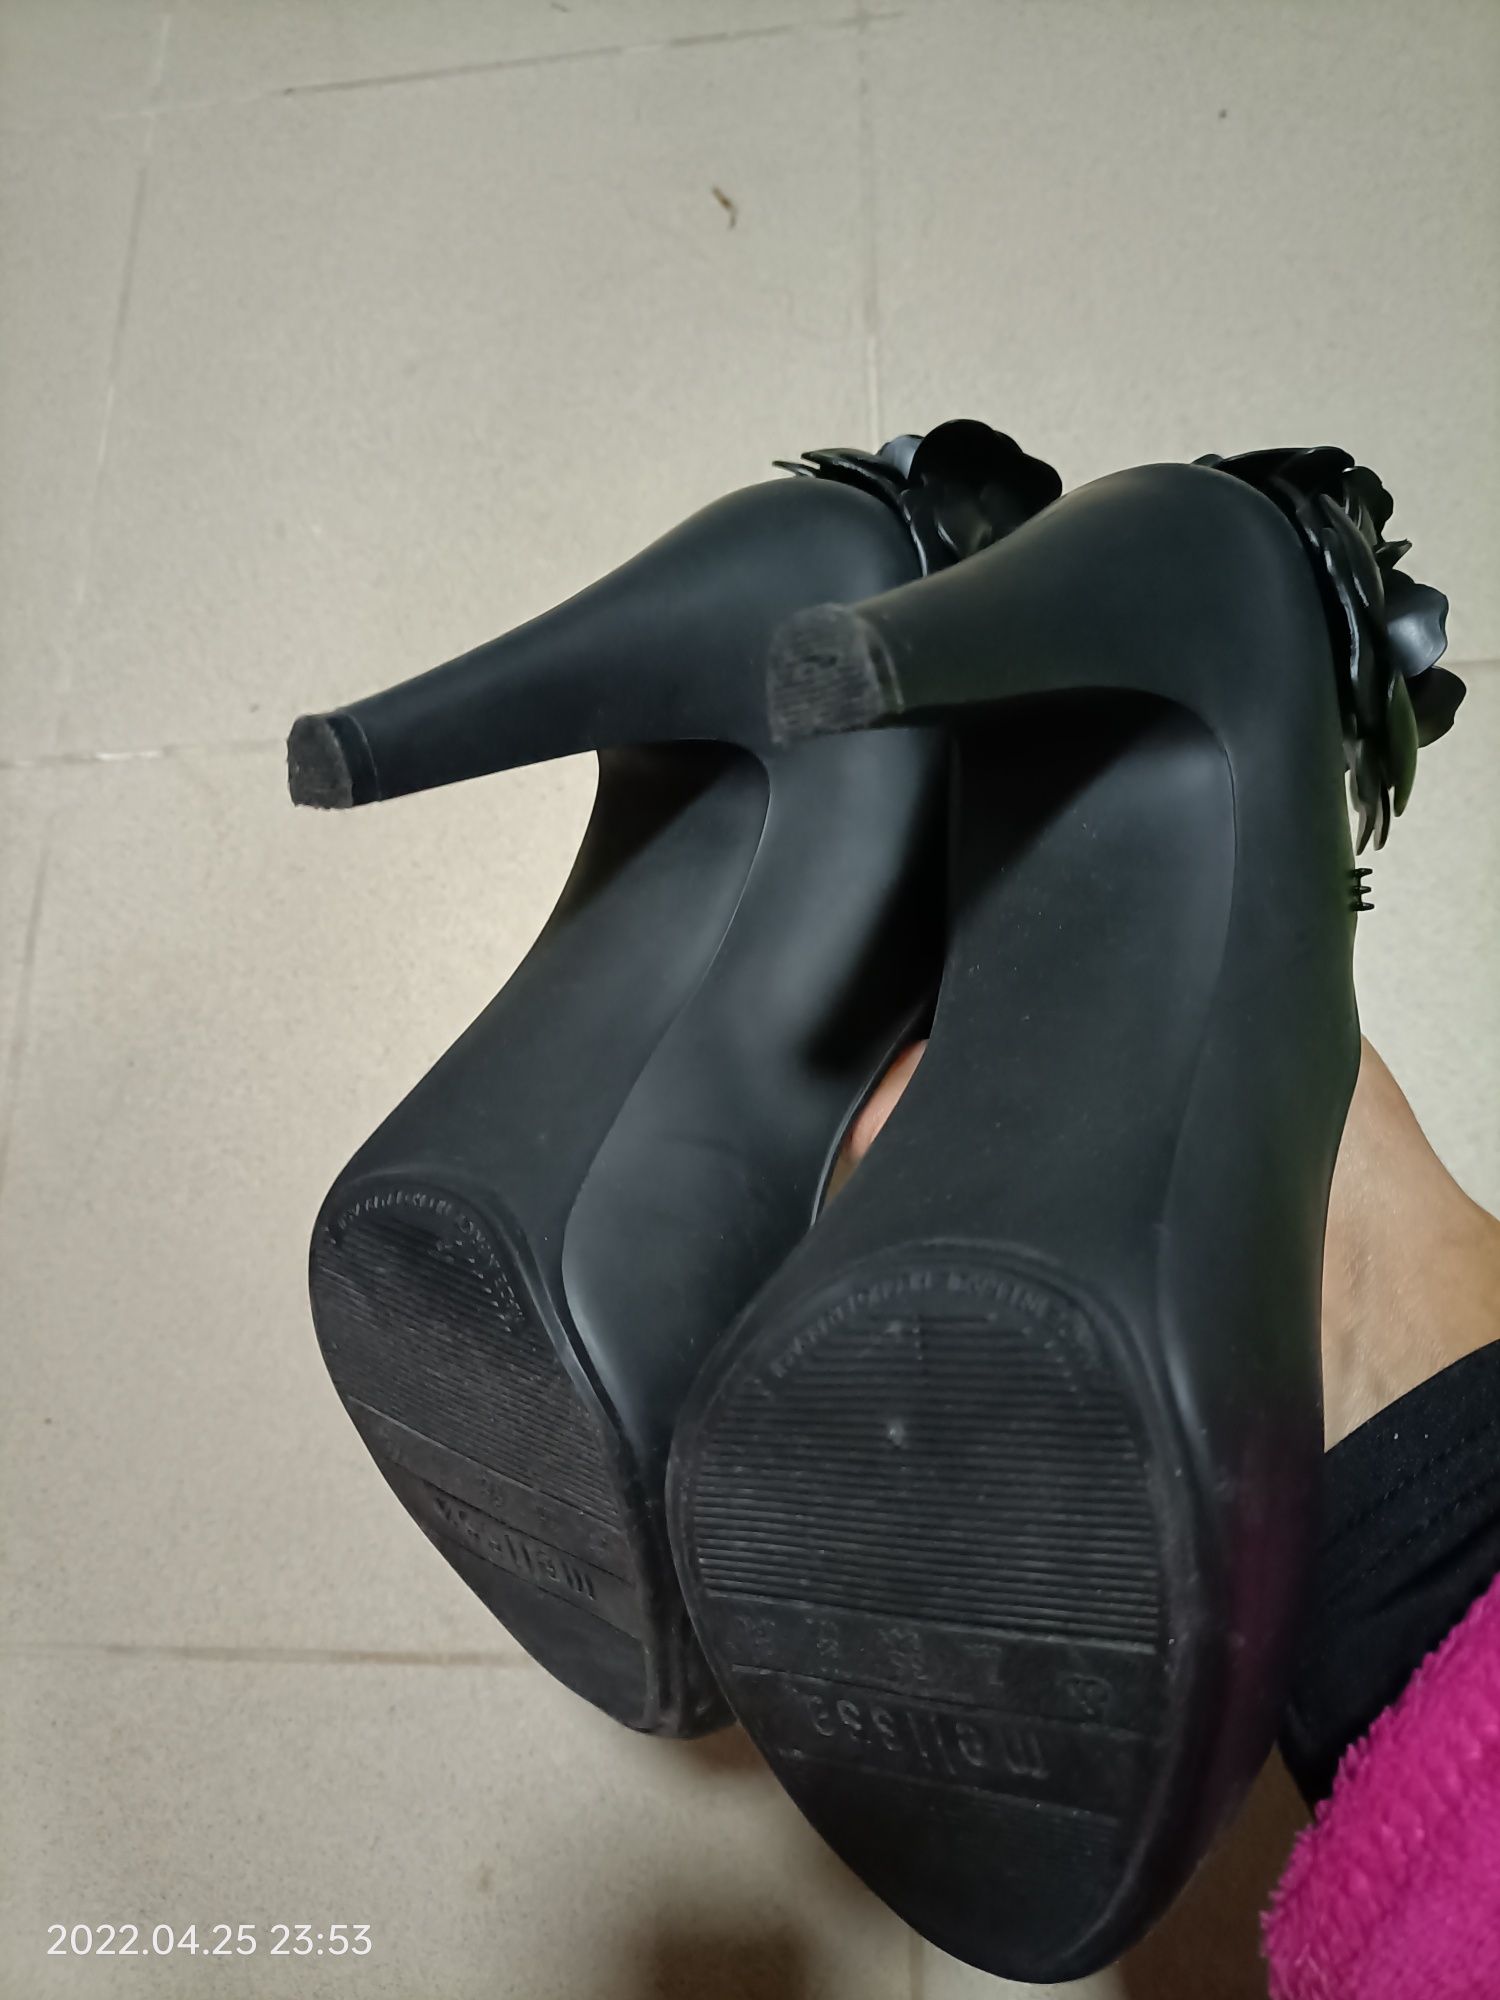 Sapatos de senhora